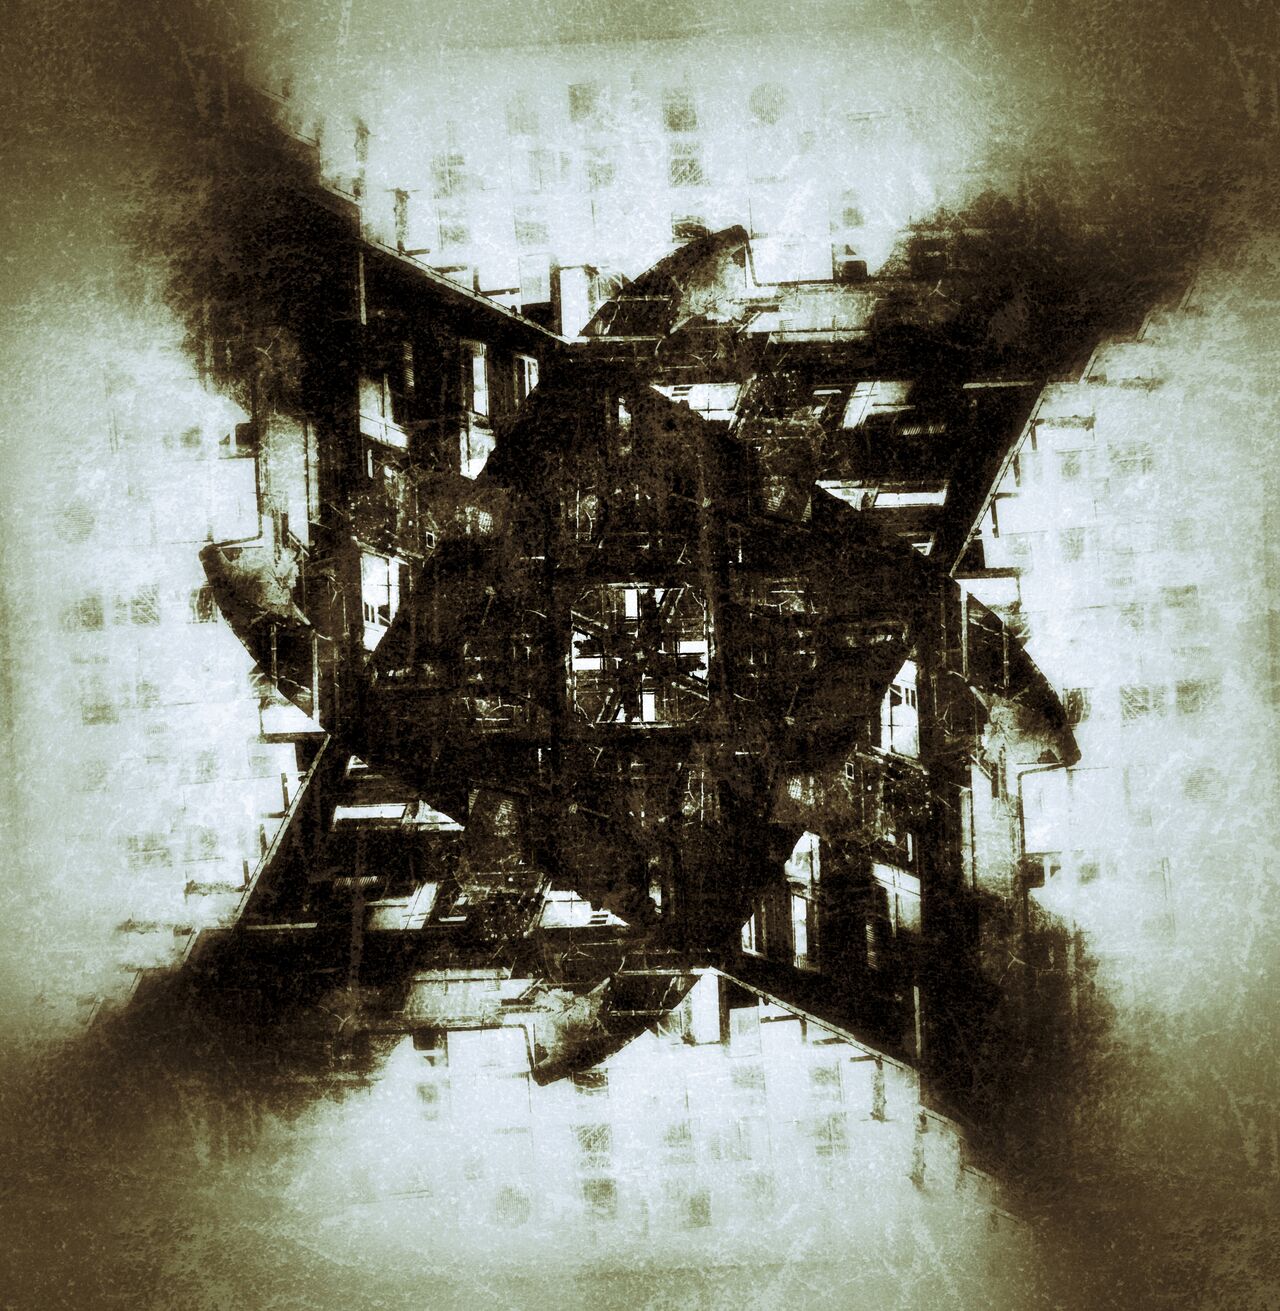 Abstrakte kreuzförmige Struktur wie durch ein Kaleidoskop gesehen in monochromen, graubraunen Farbtönen.